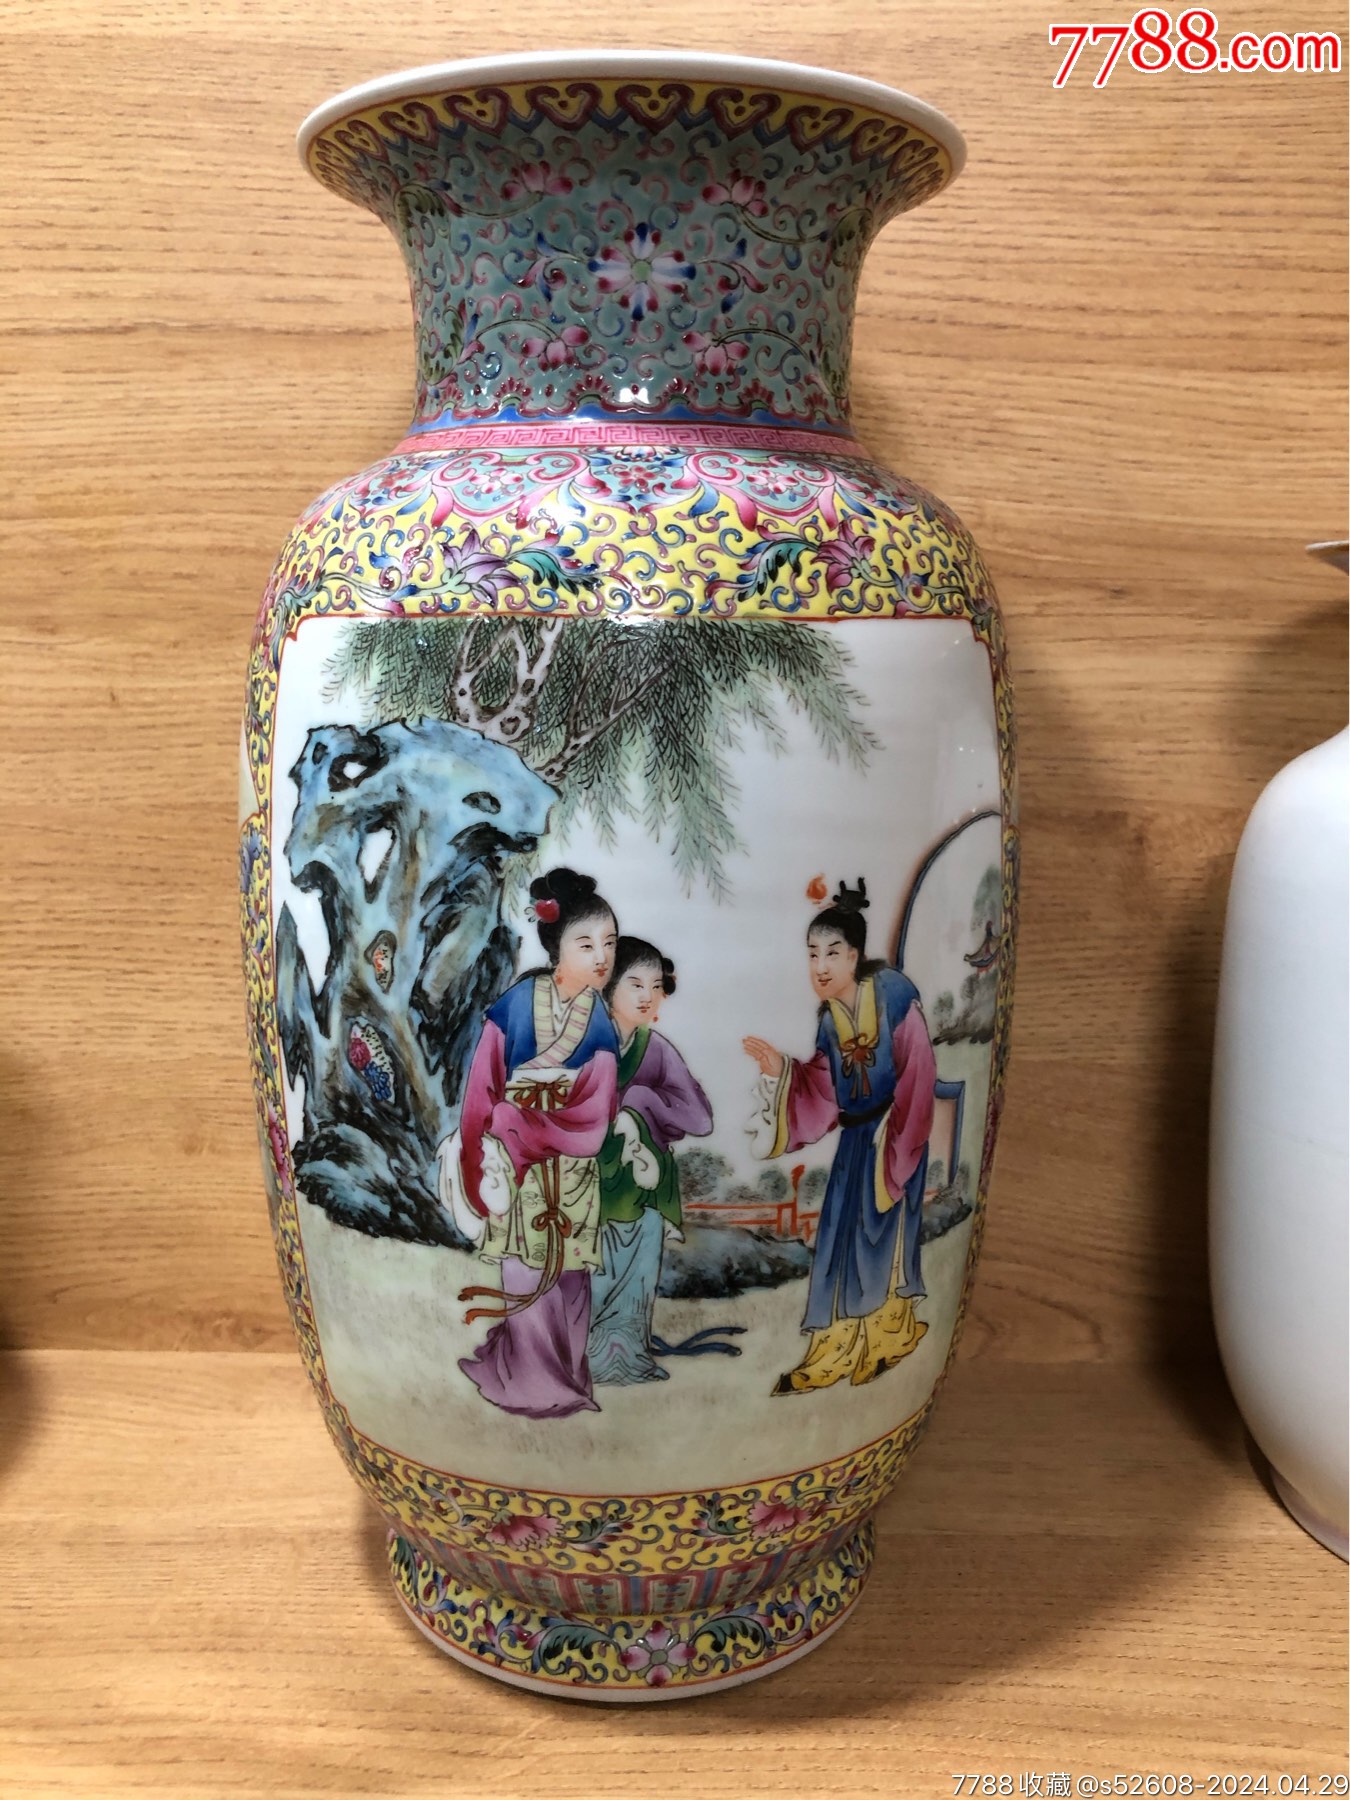 八十年代景德镇艺术瓷厂重工粉彩花瓶-彩绘瓷/彩瓷-7788旧书网